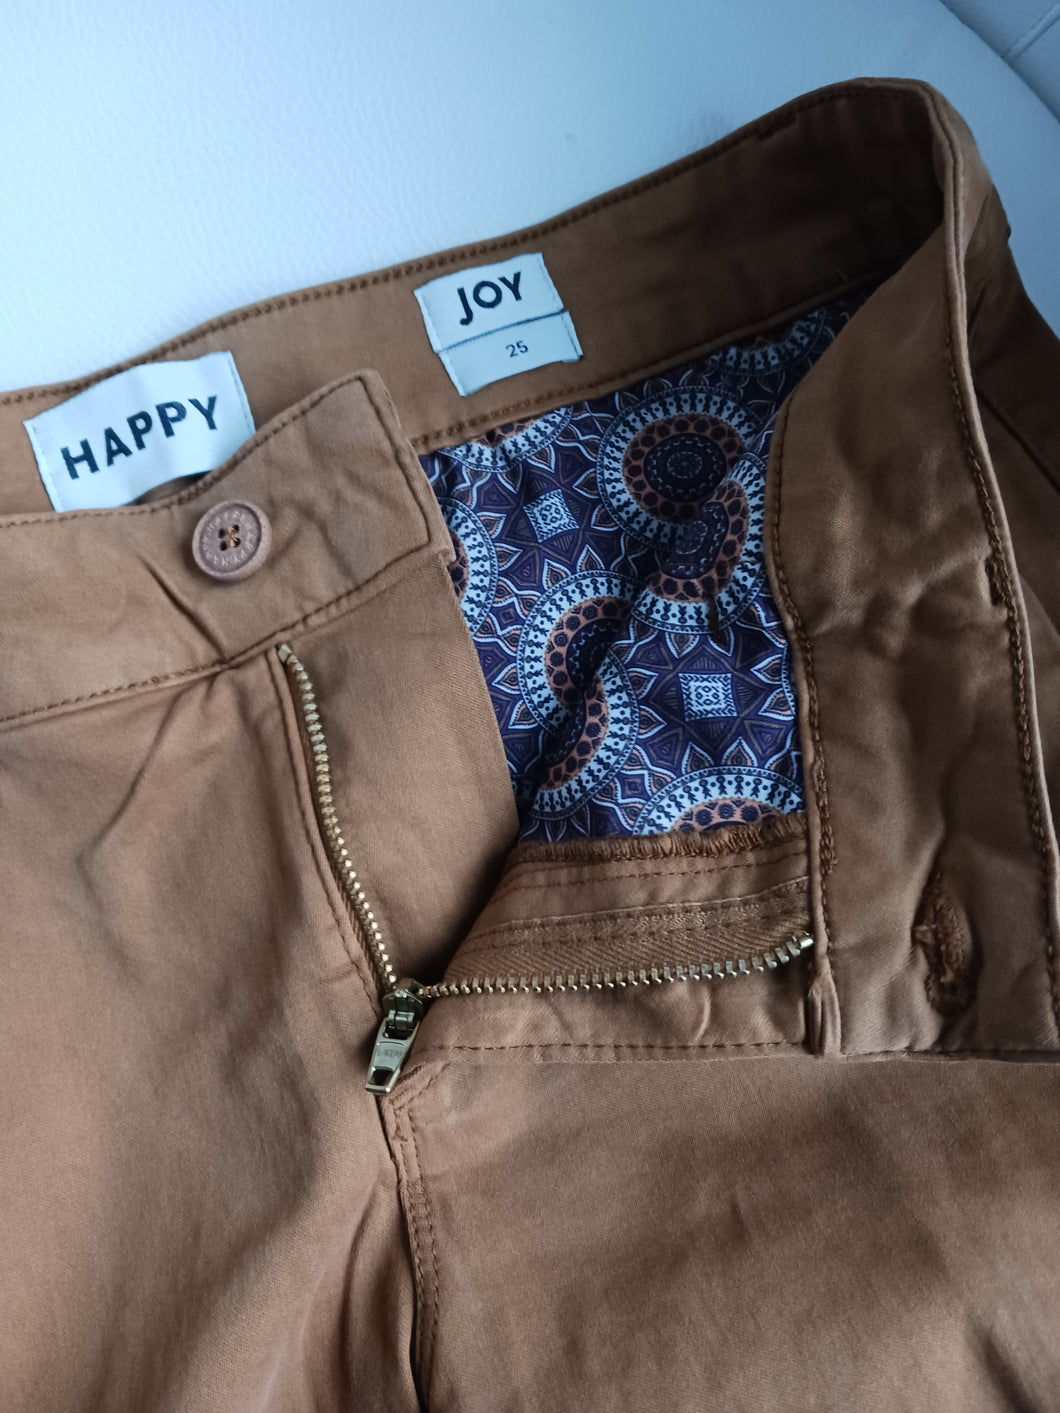 la-boutik-happy-pantalon-joy-femme